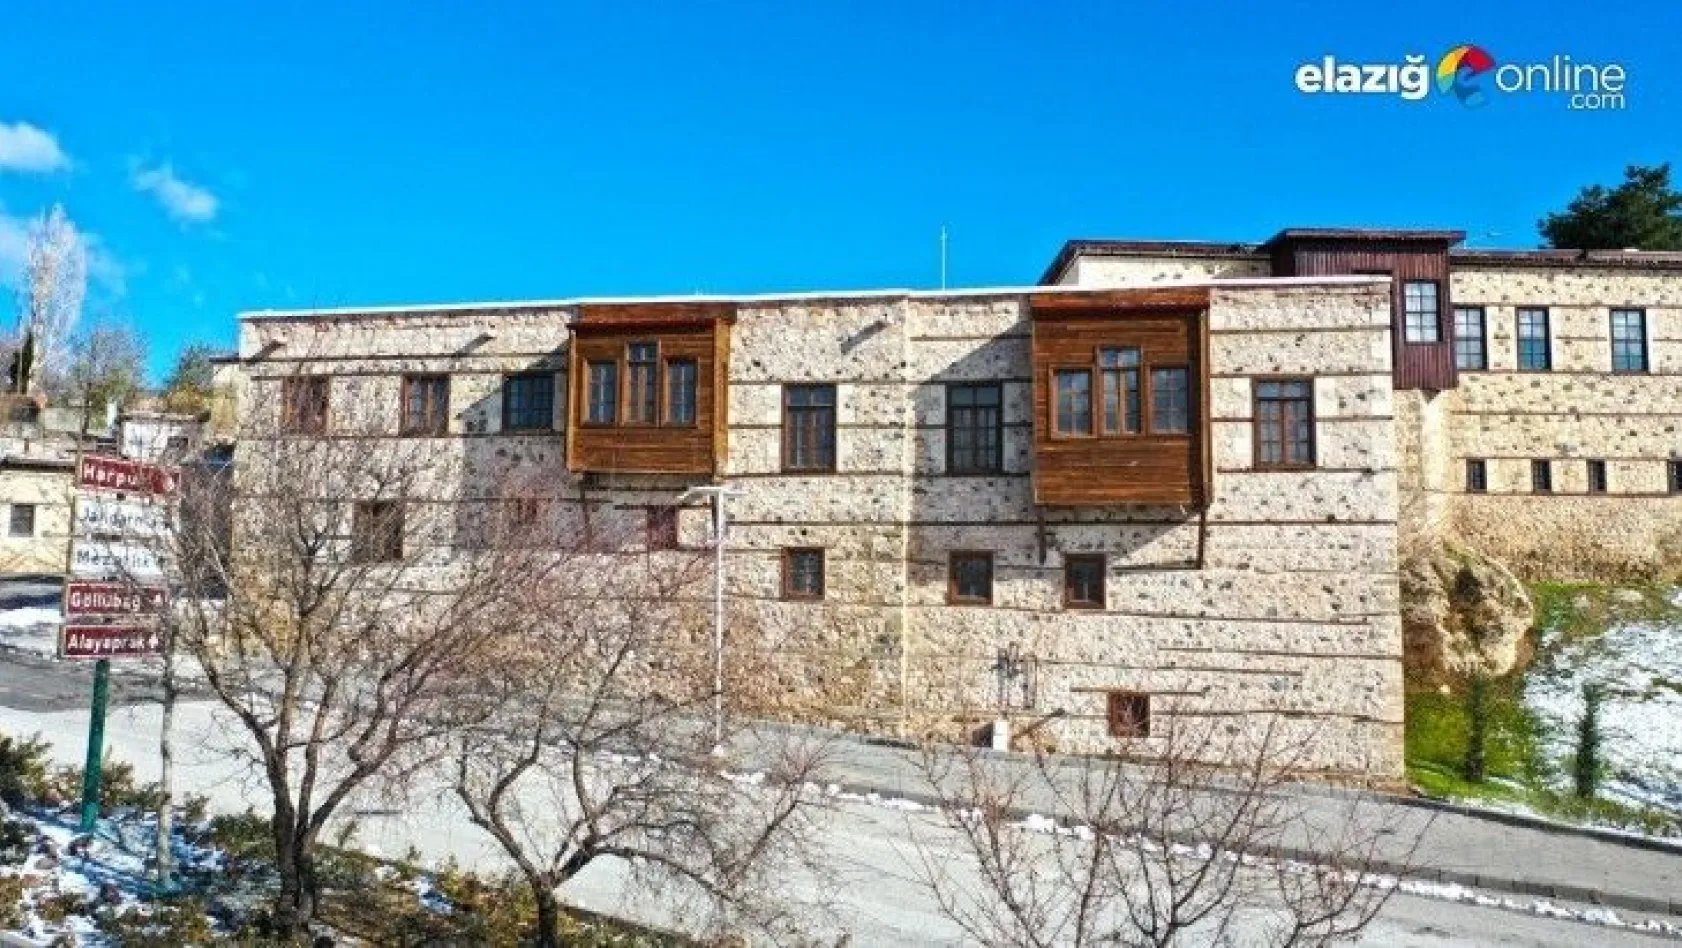 Tarihi konak, Elazığ Basın Müzesi ve Basın Evi'ne dönüşüyor